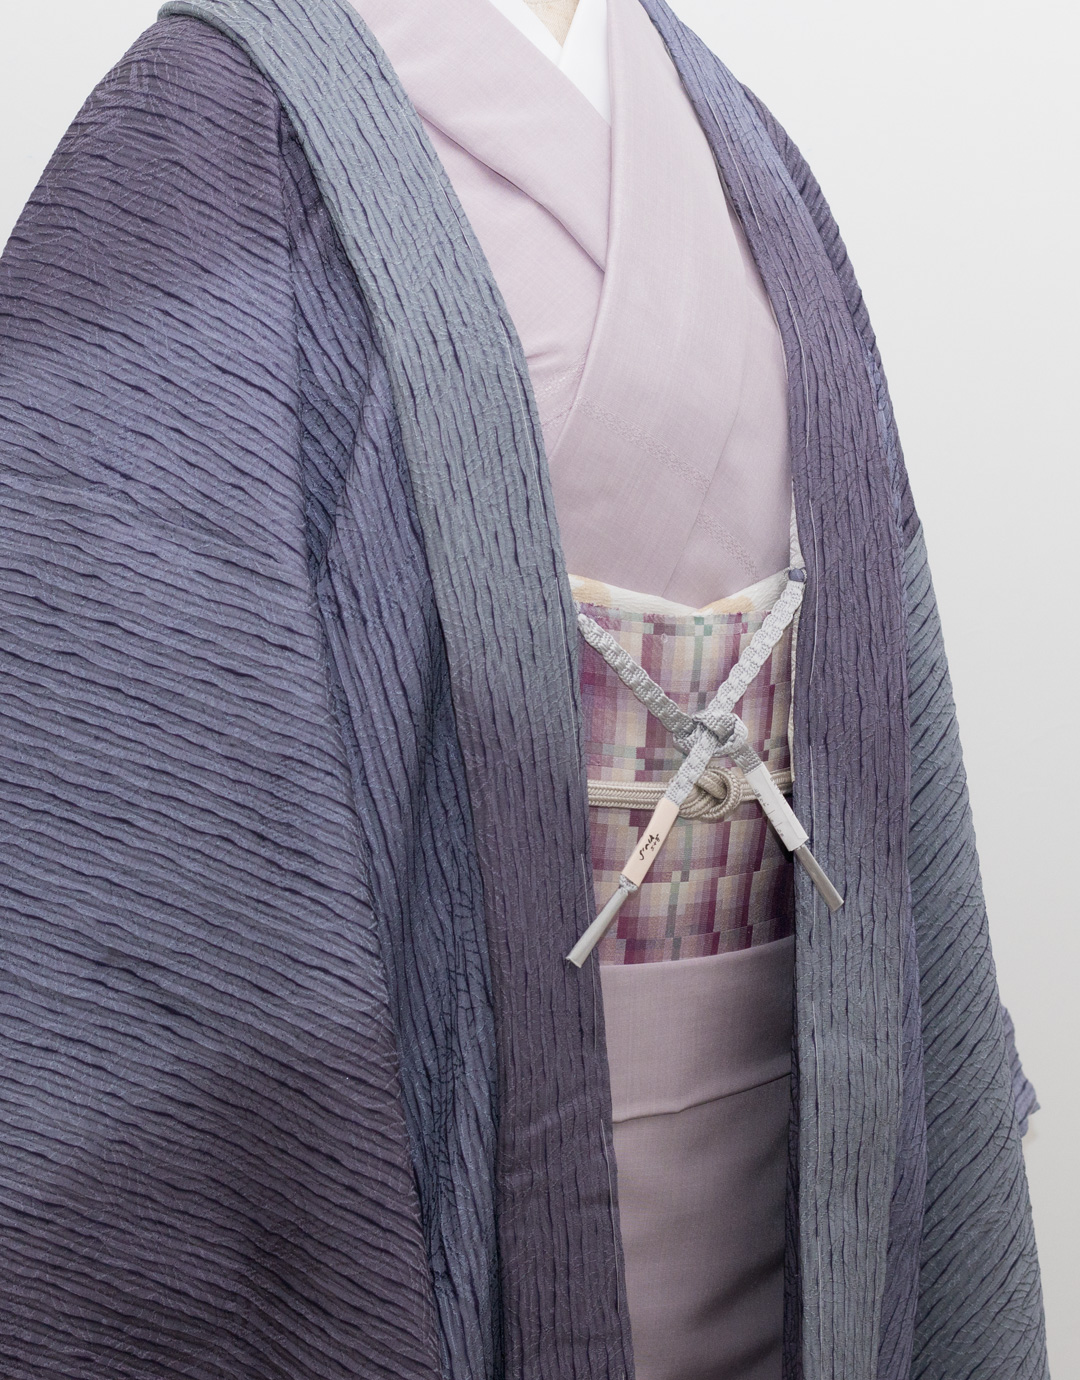 佐竹孝子さんの帯「牡丹」と羽織のコーディネート